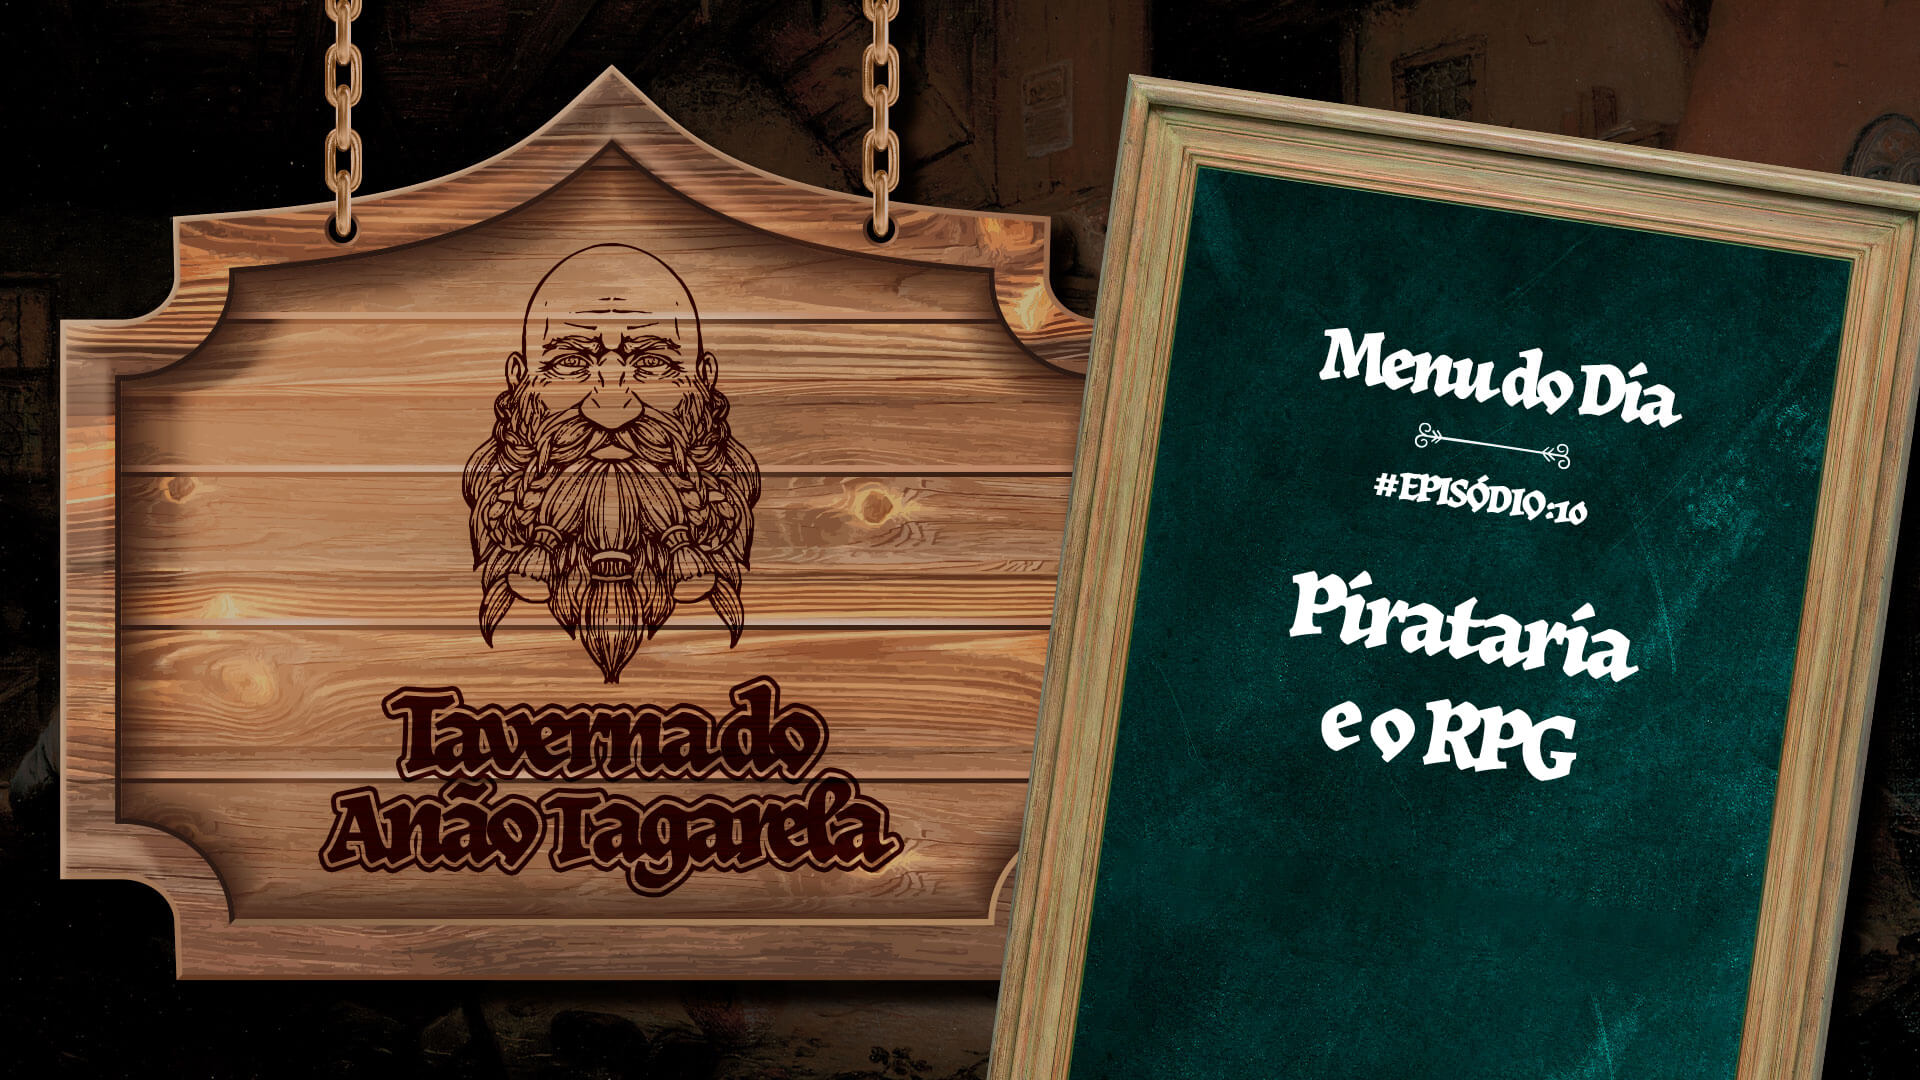 Pirataria e o RPG – Taverna do Anão Tagarela #10